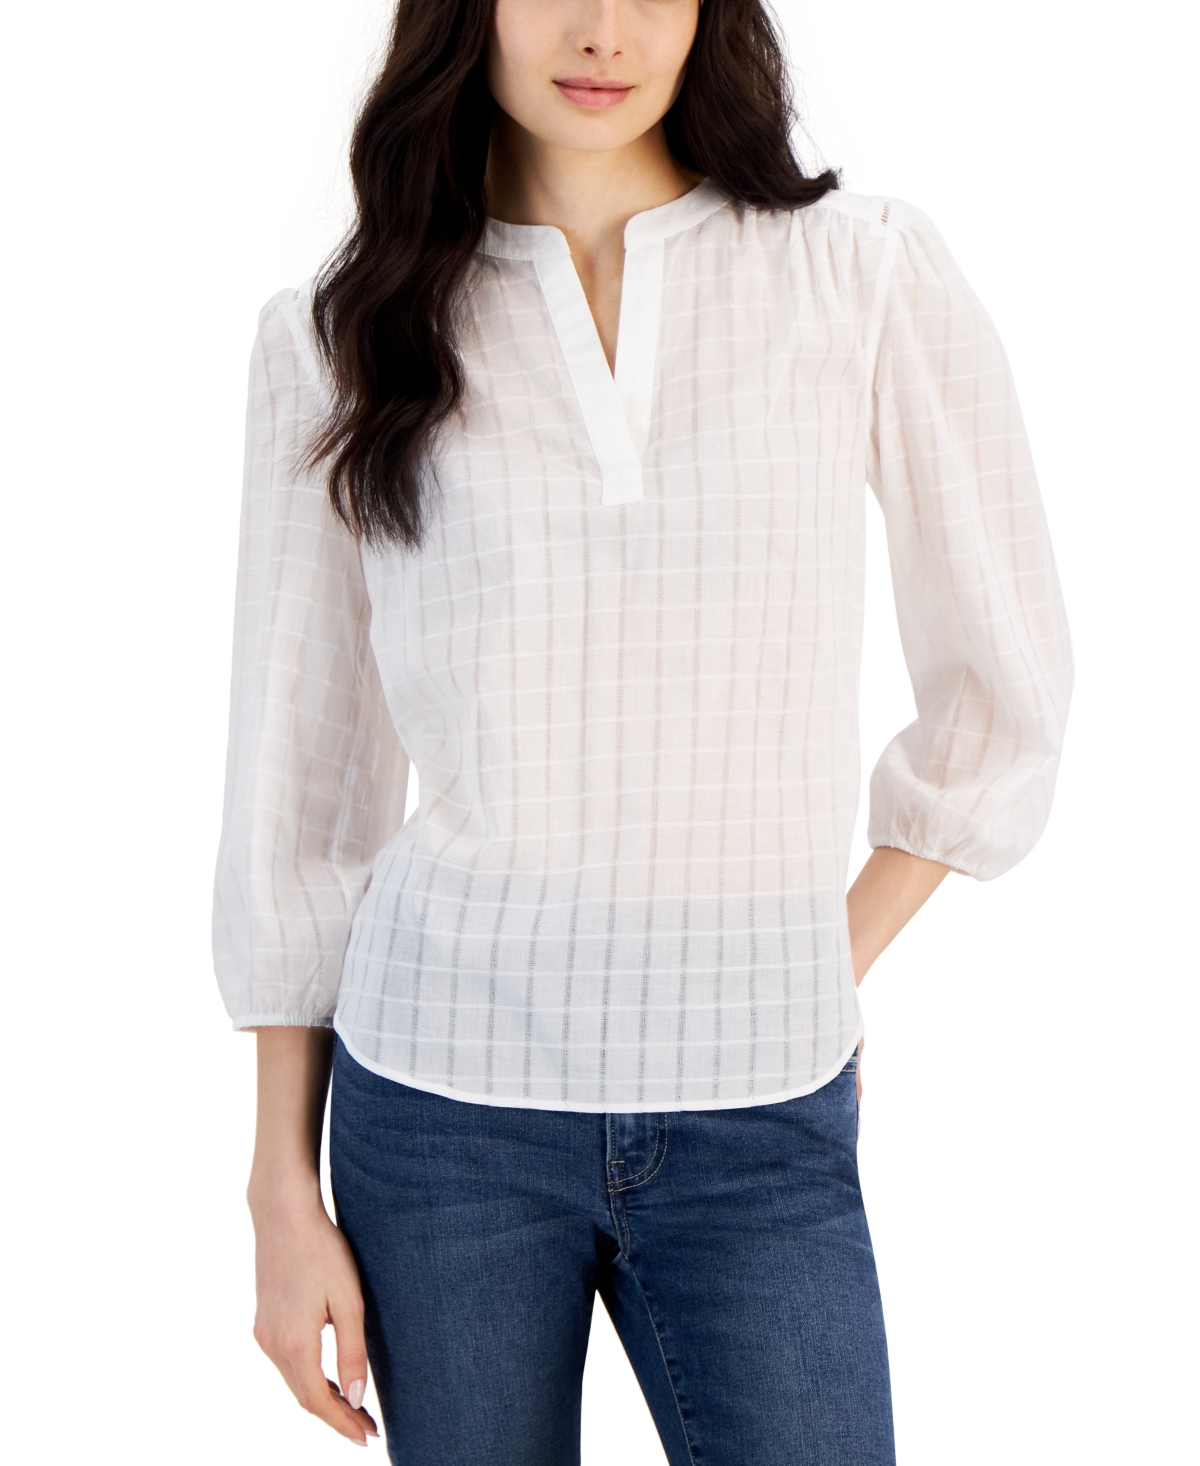 Women's Cotton Split-Neck Popover Top - Bright White